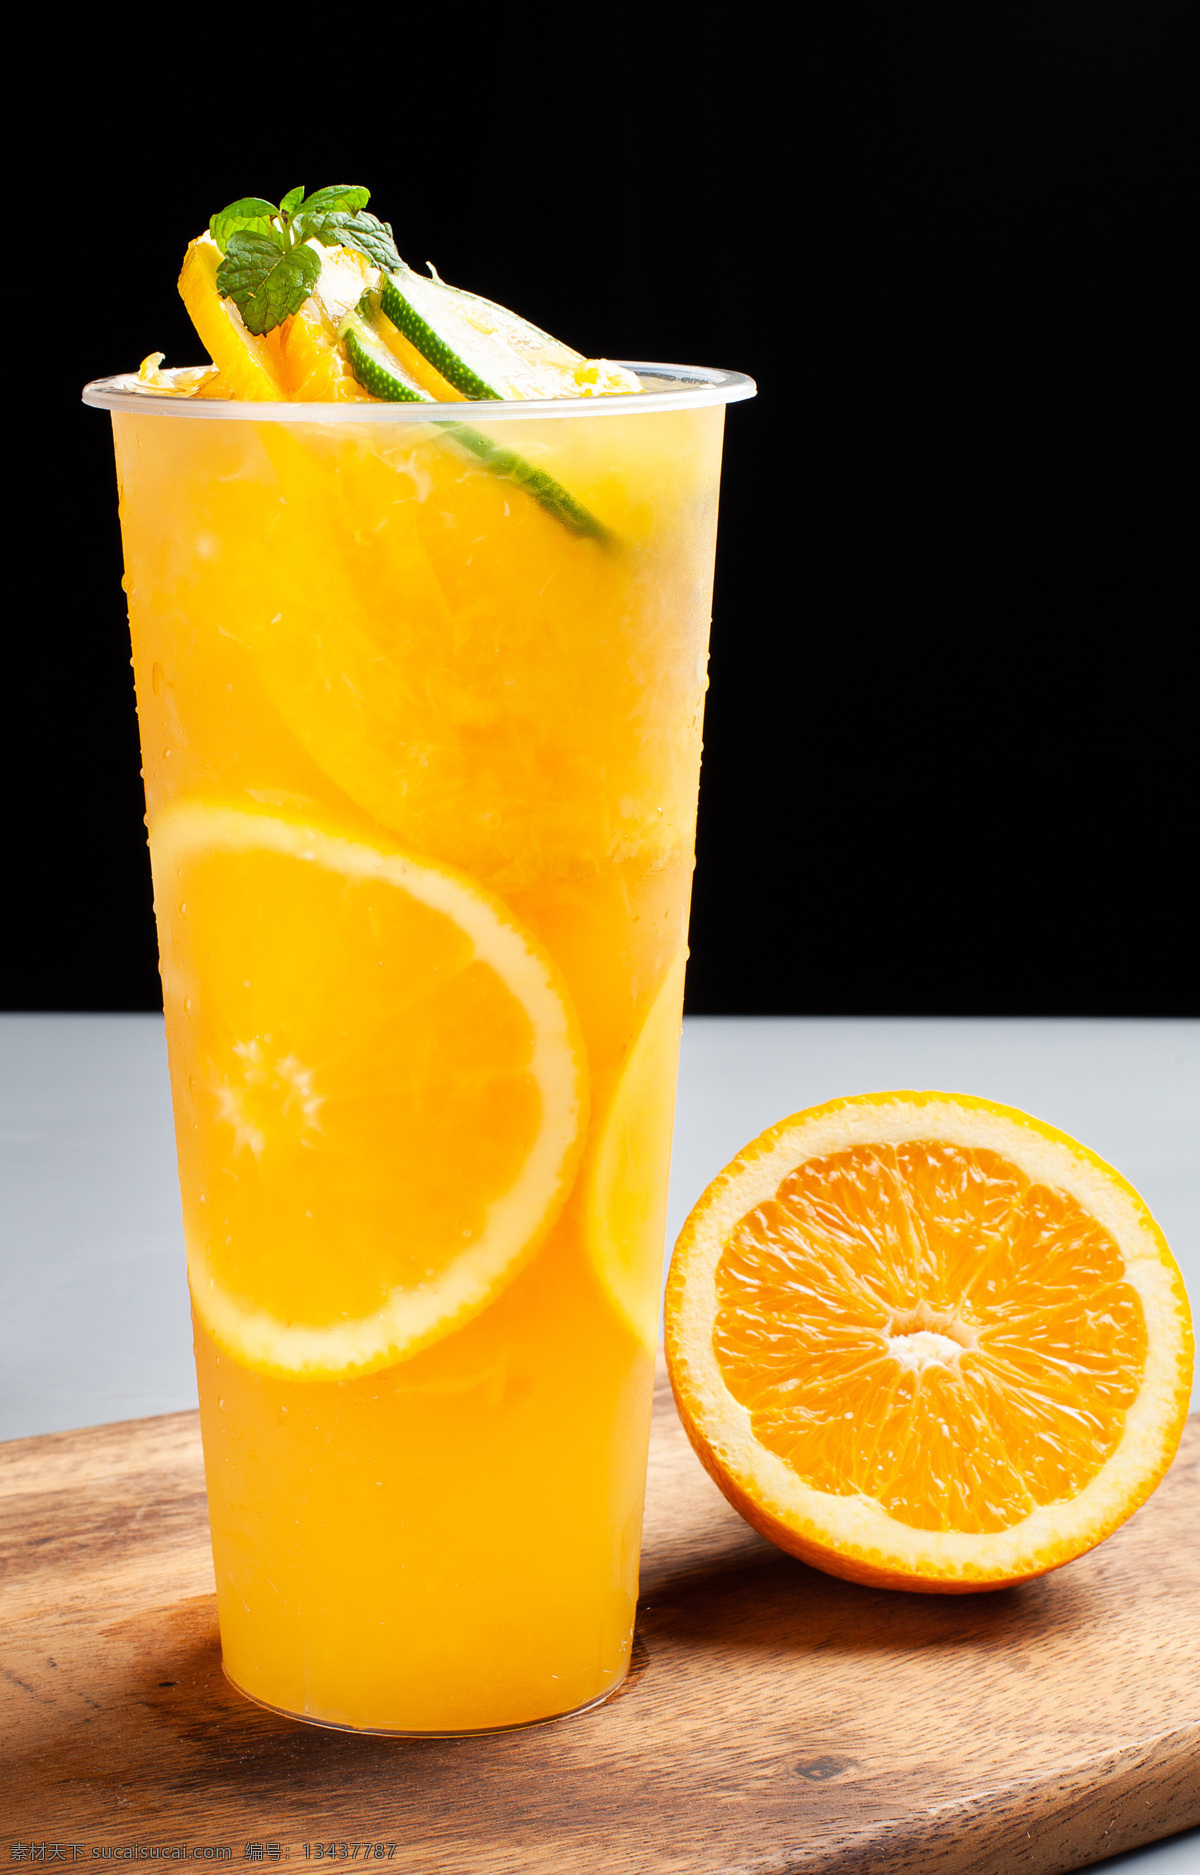 鲜橙汁 橙子 橙汁 橙子果茶 柠檬茶 奶茶 餐饮美食 饮料酒水